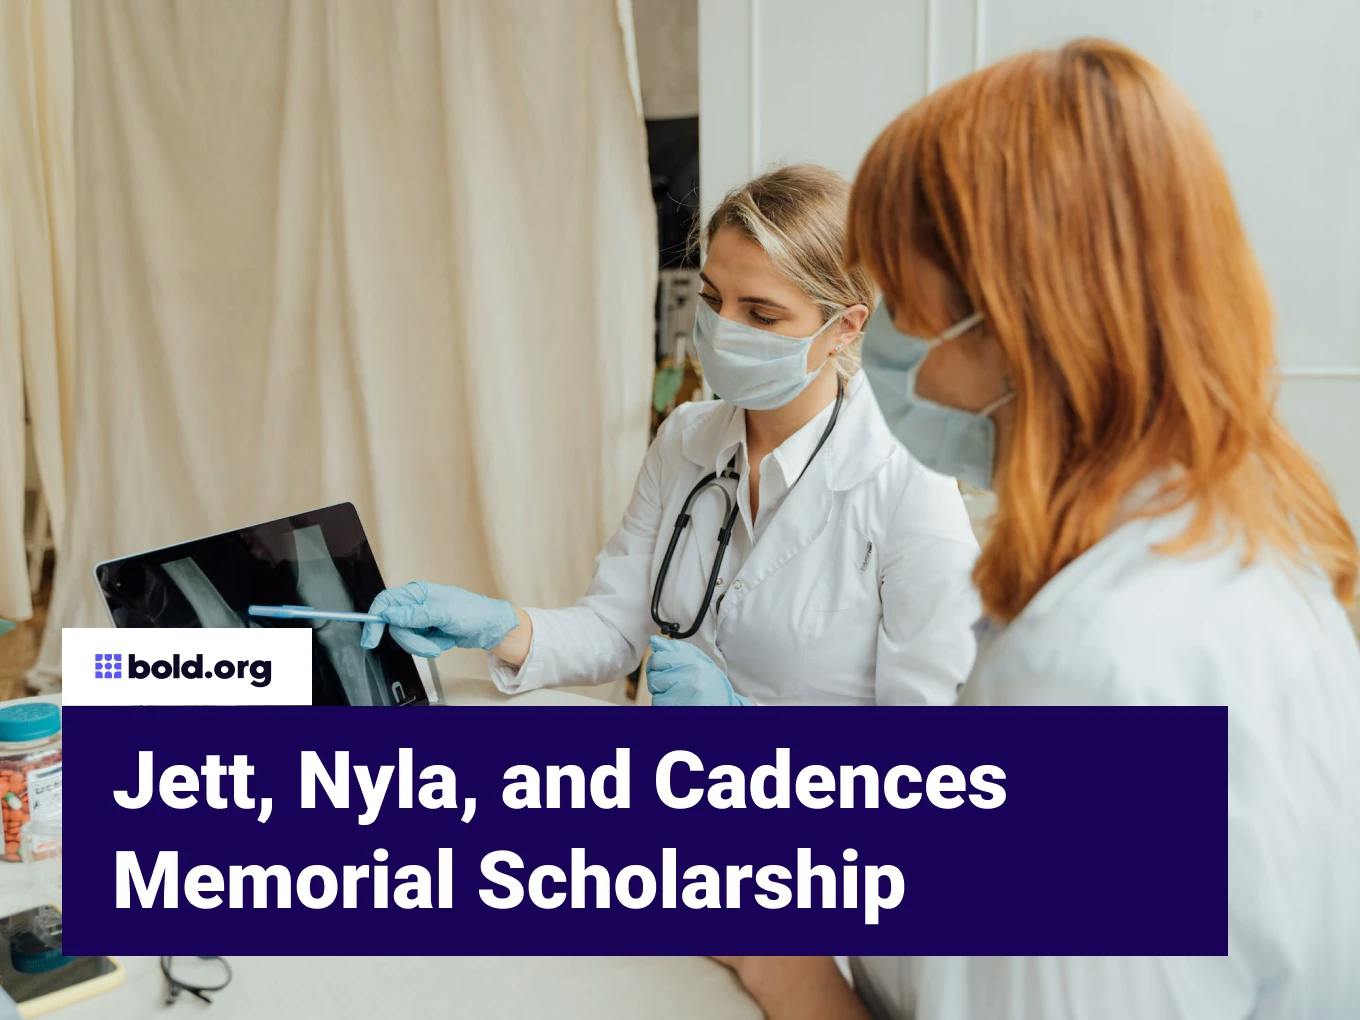 Jett, Nyla, and Cadences Memorial Scholarship